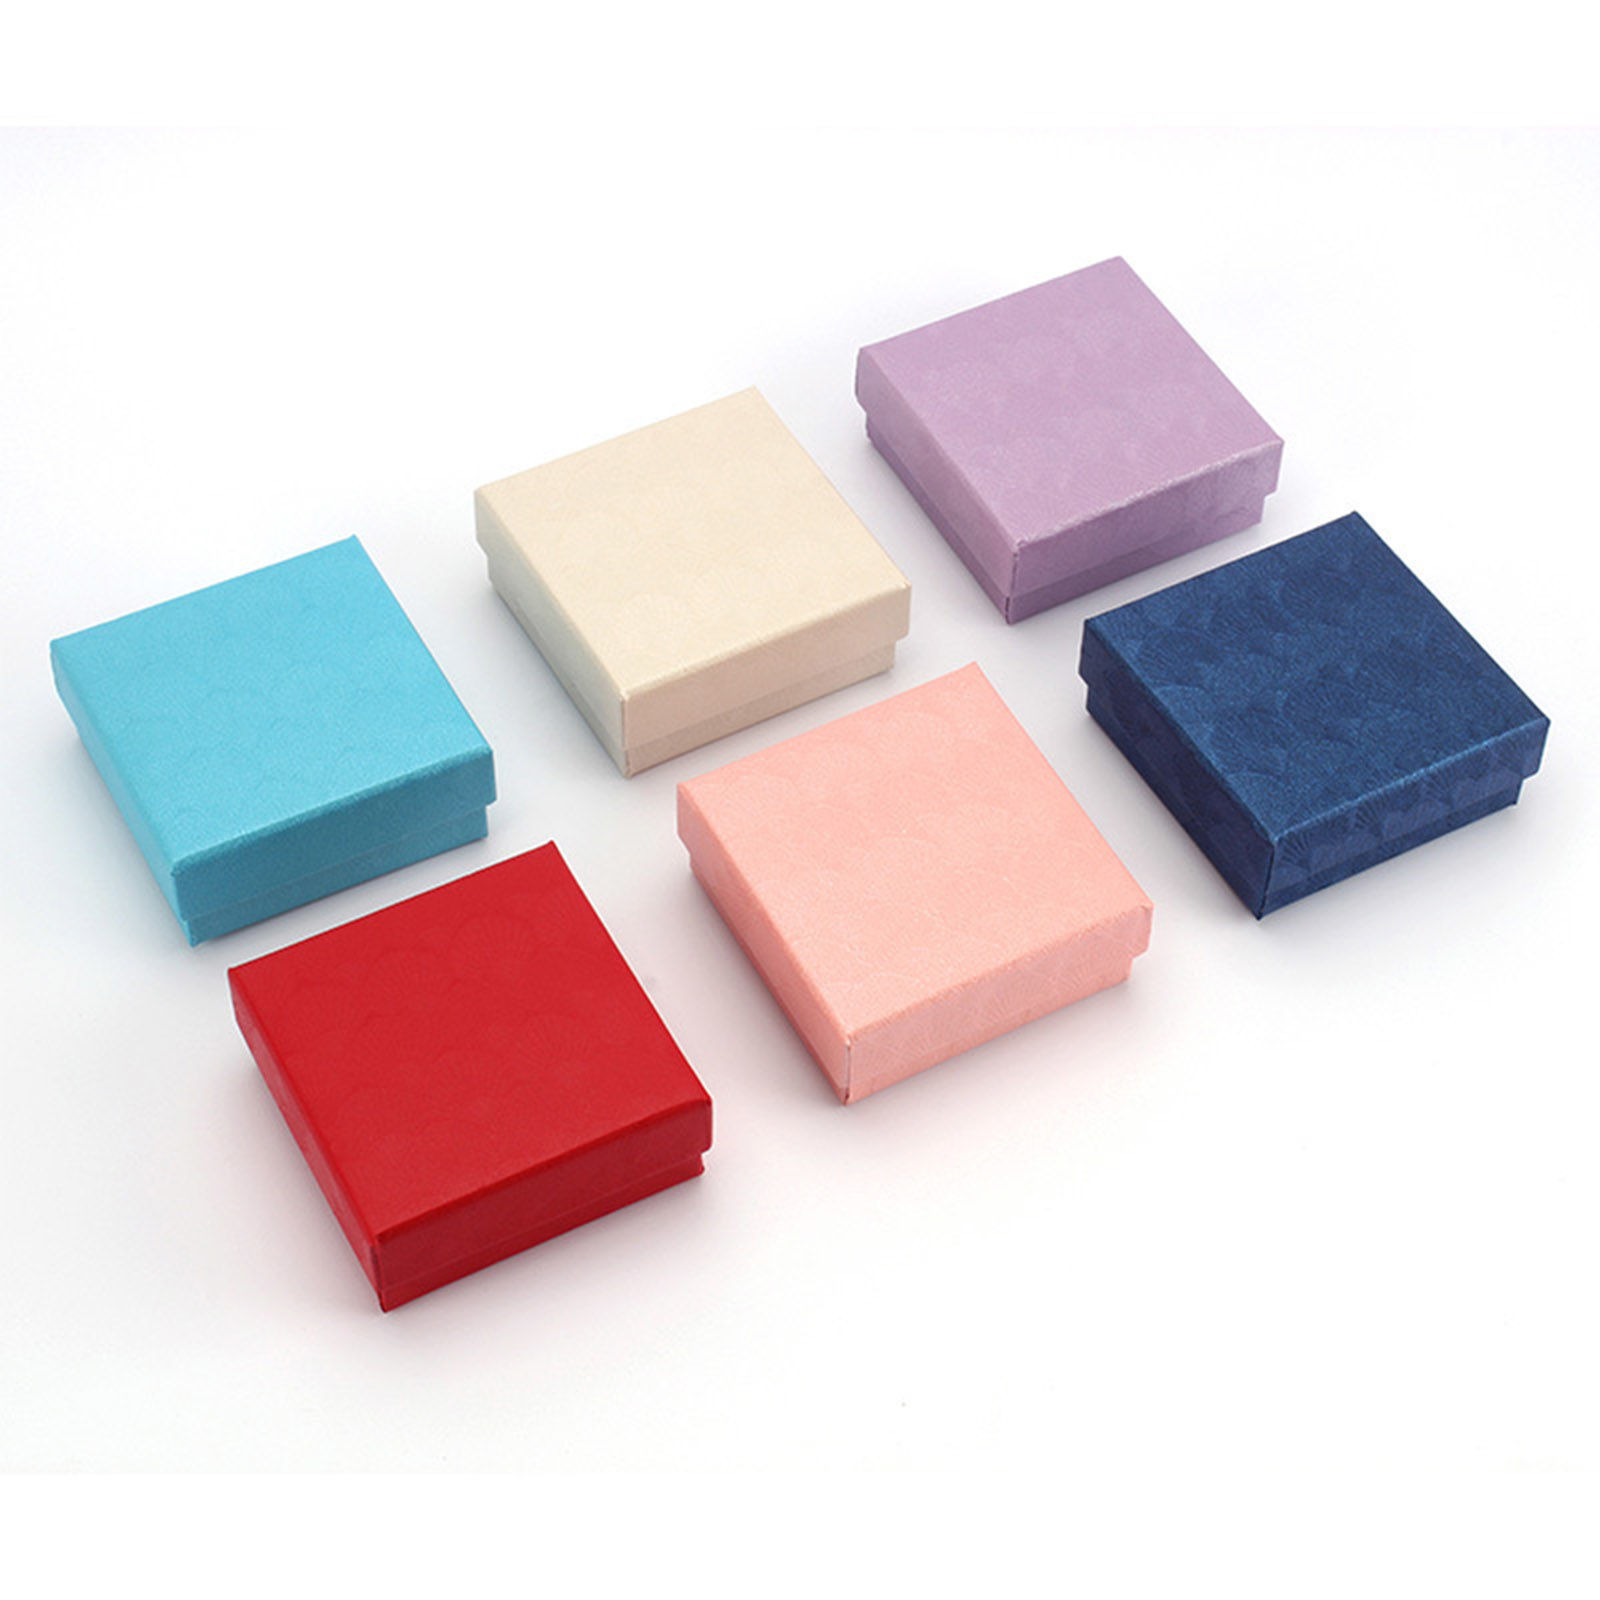 Immagine di Paper Jewelry Gift Boxes Square Multicolor Shell Pattern 7.5cm x 7.5cm x 3cm , 10 PCs